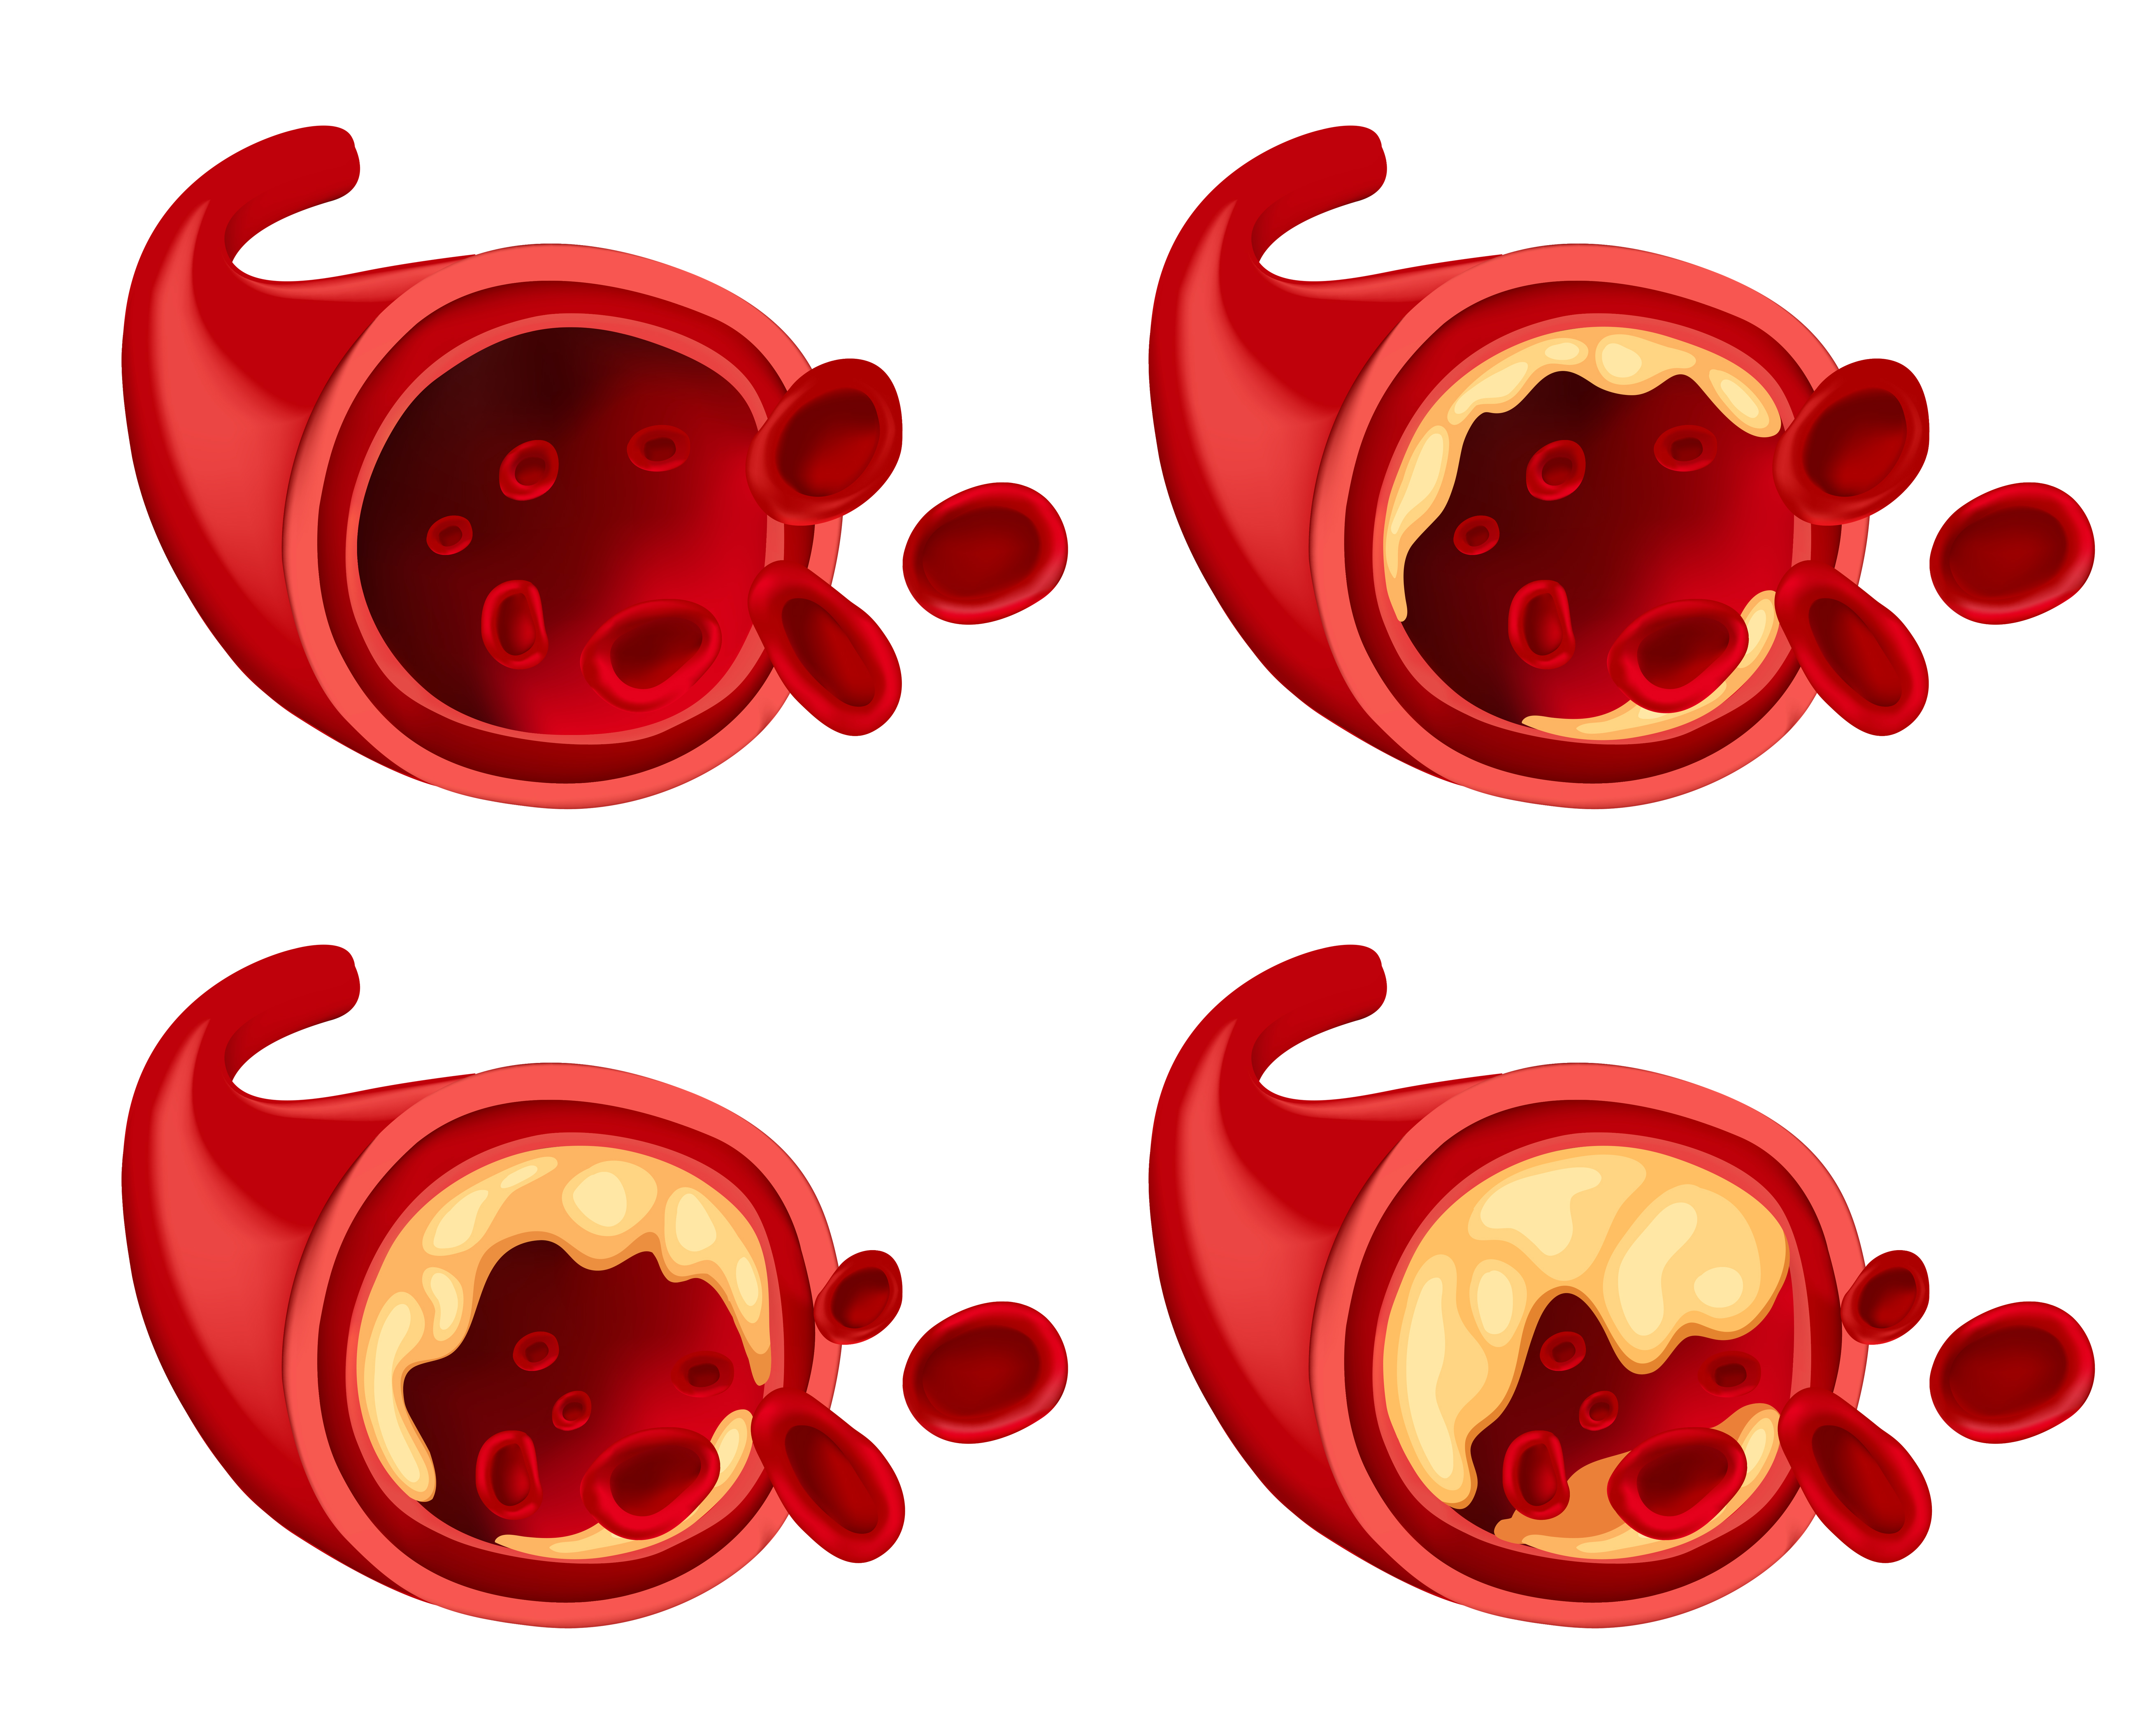 혈관의 단면의 이미지인데, 왼쪽 위부터 정상적인 혈관이고, 오른쪽 위는 고지혈증이 약간 진행된 상태, 왼쪽 아래는 더 많이 진행된 상태, 오른쪽 밑에는 매우 많이 진행된 상태를 나타낸 이미지